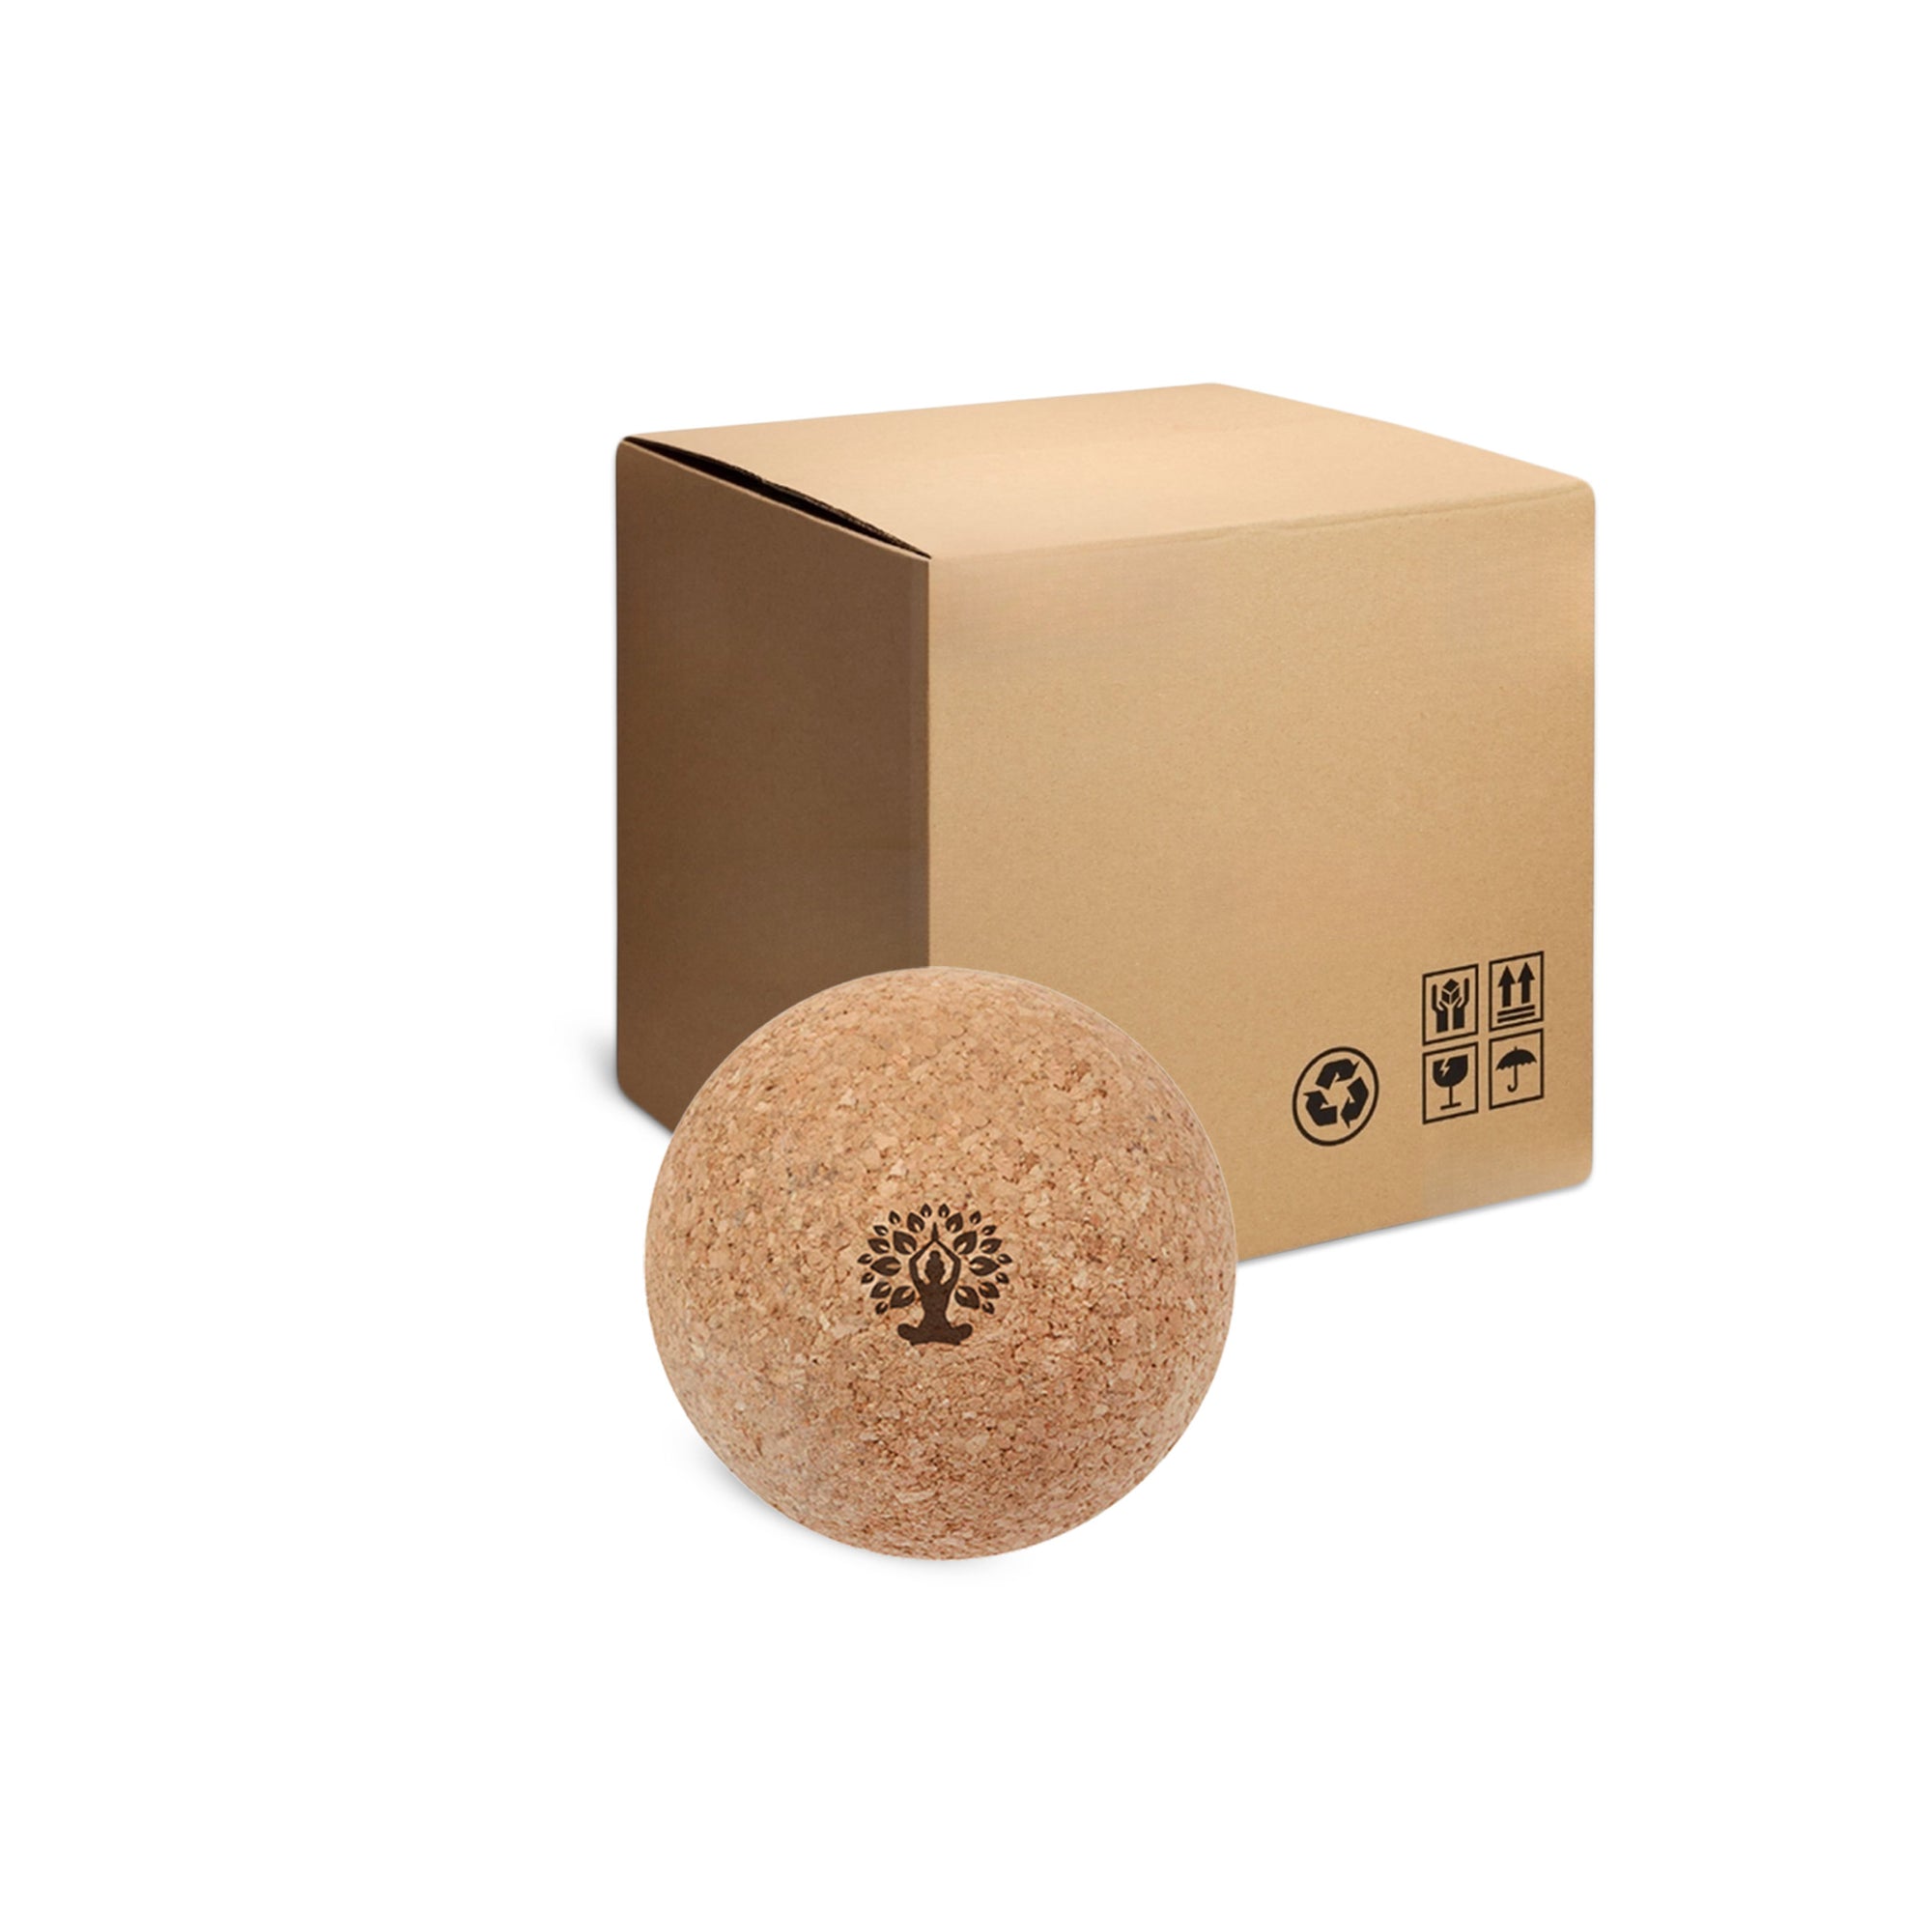 Cork Massage Balls Wholesale - Box of 20